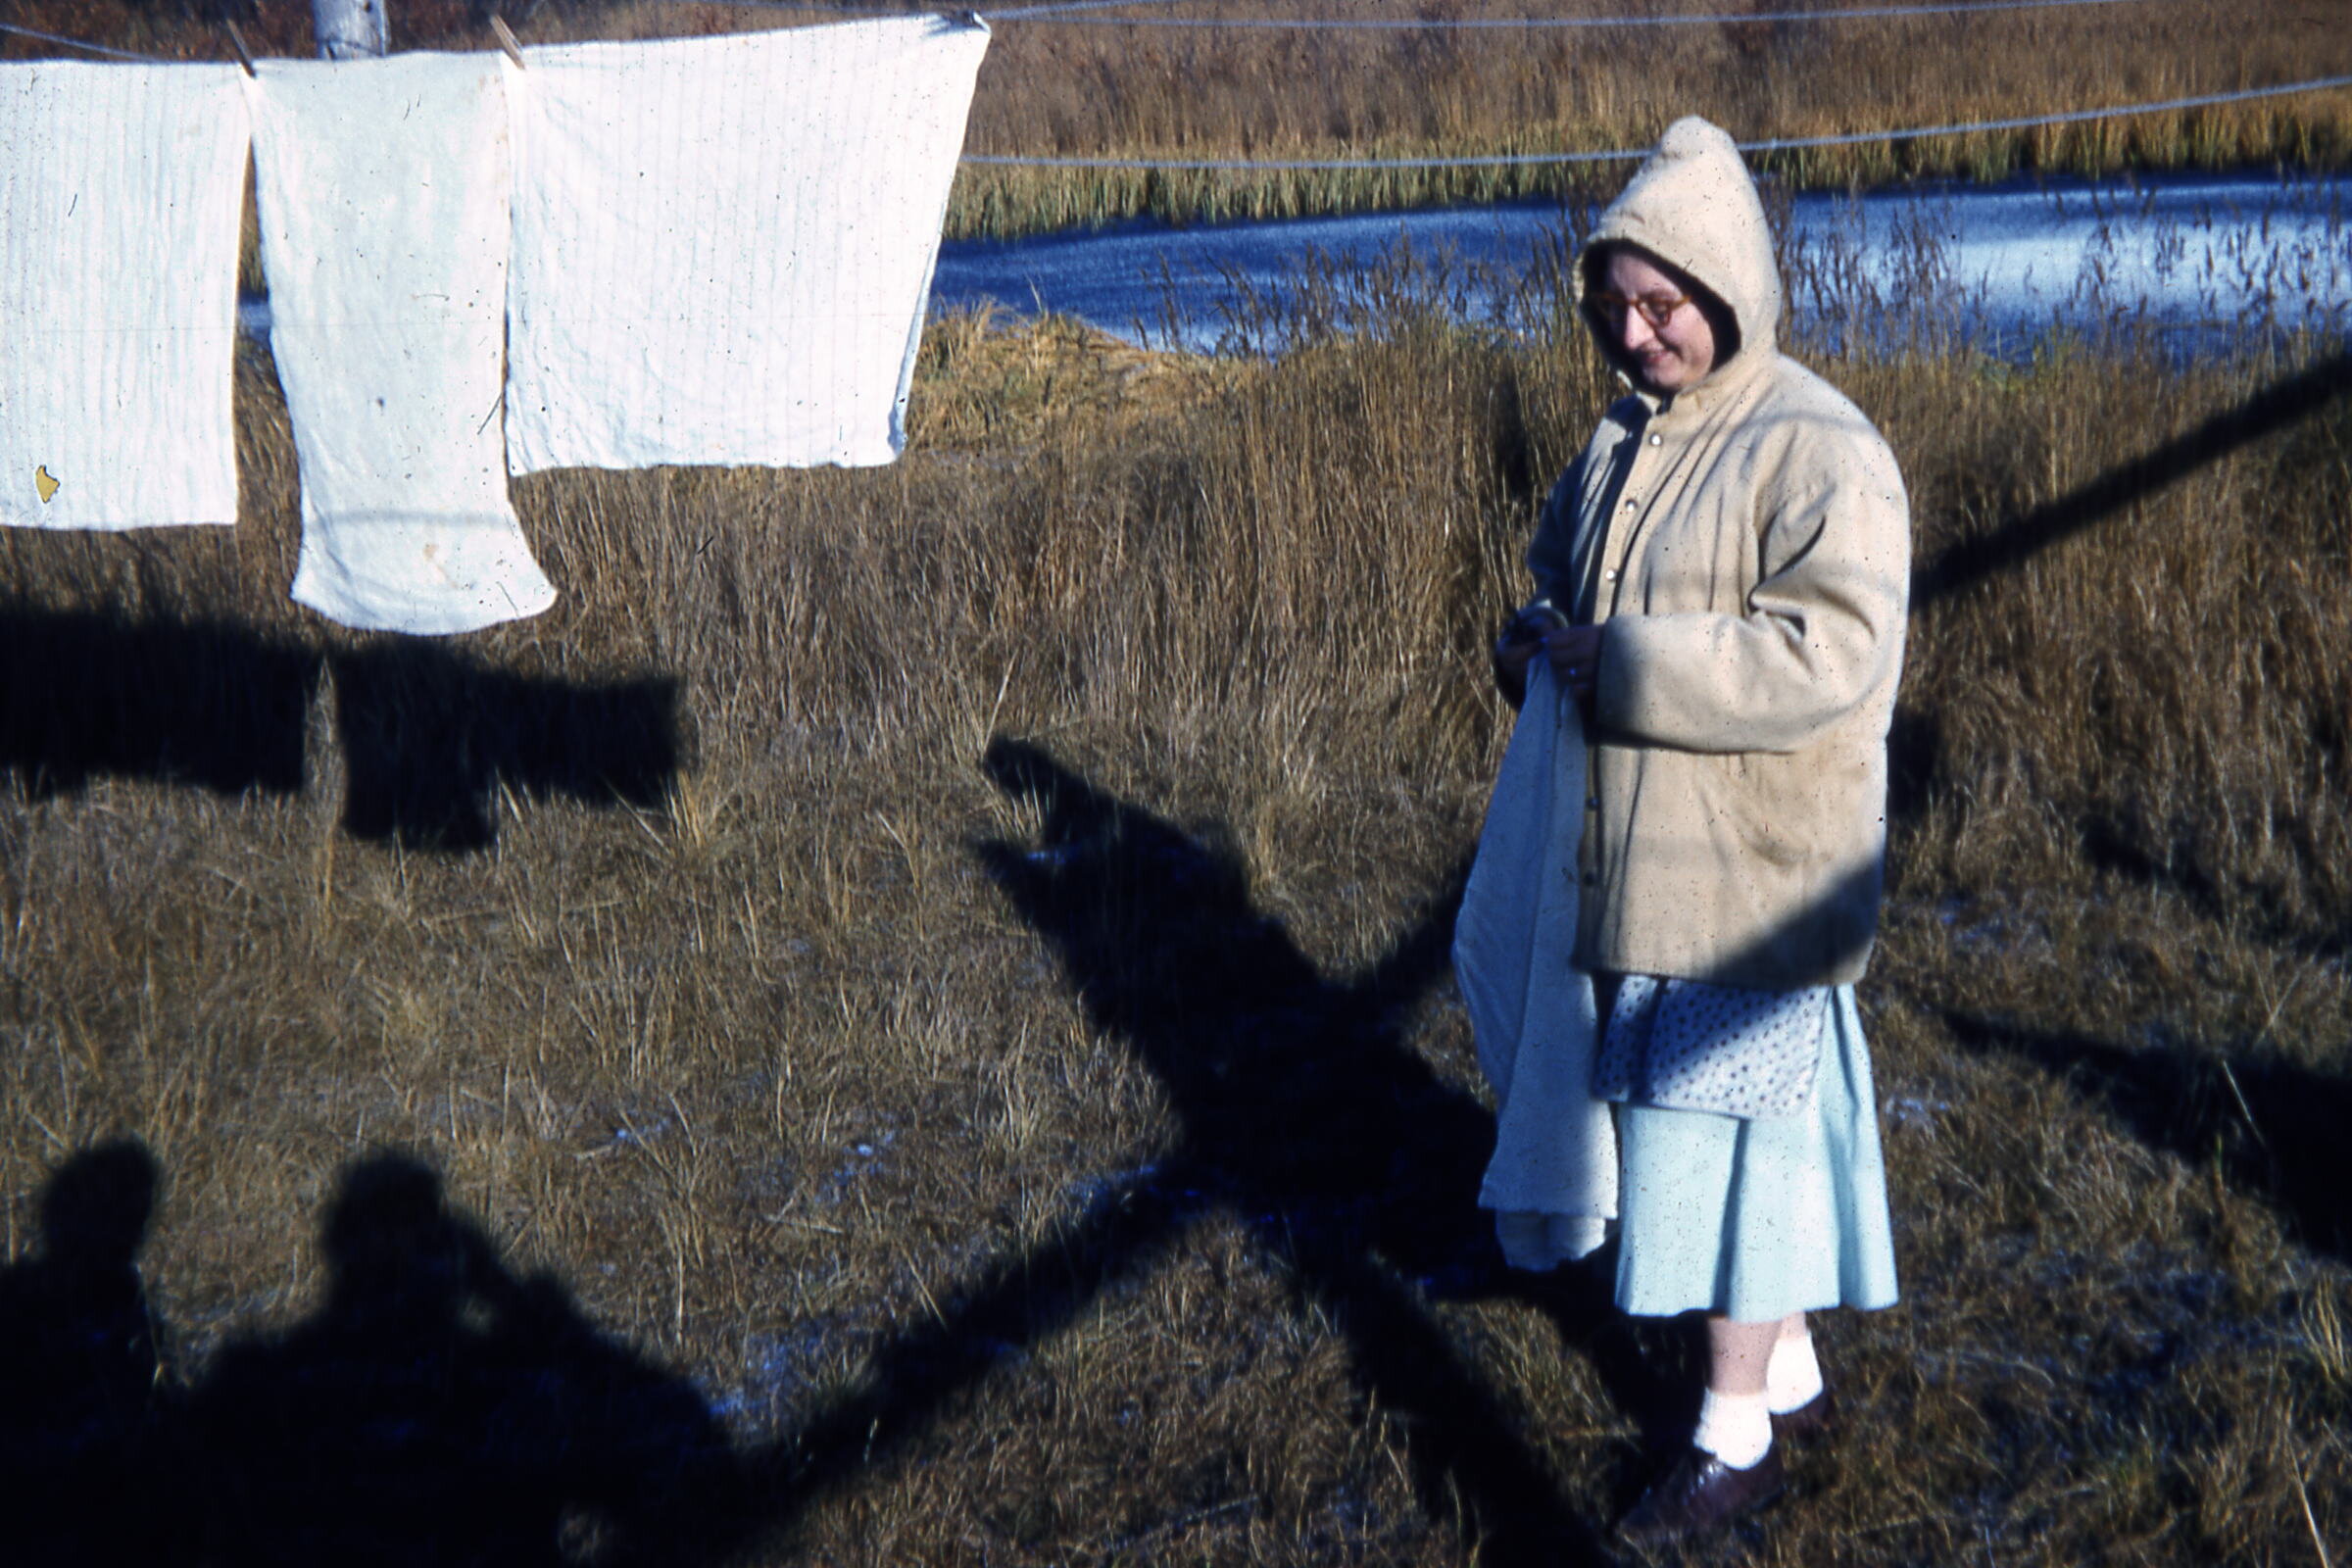 50s - Clara Cooper hanging laundry.jpg